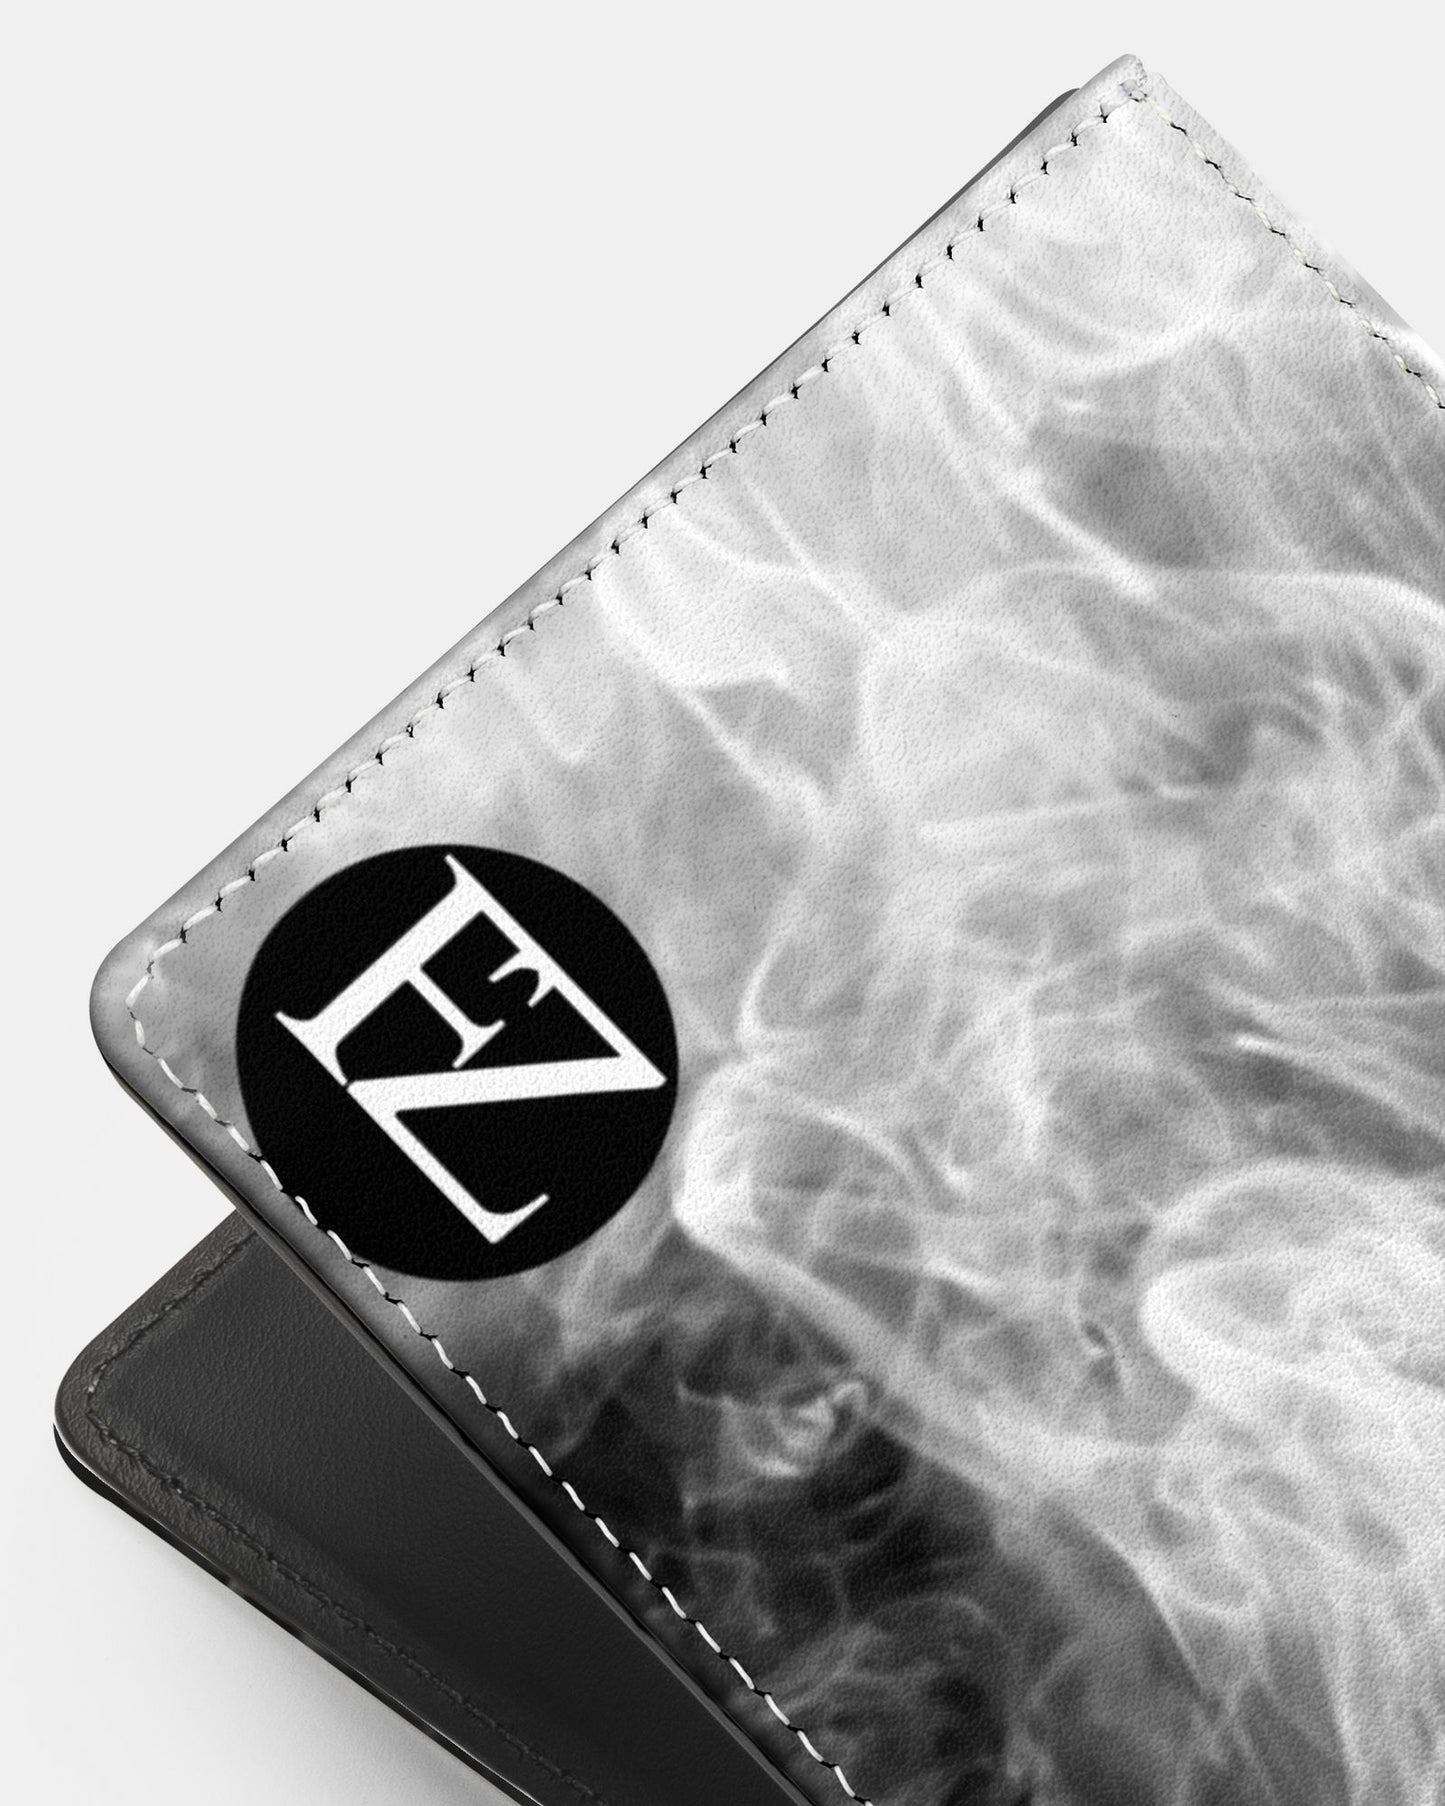 fz men's designer wallet